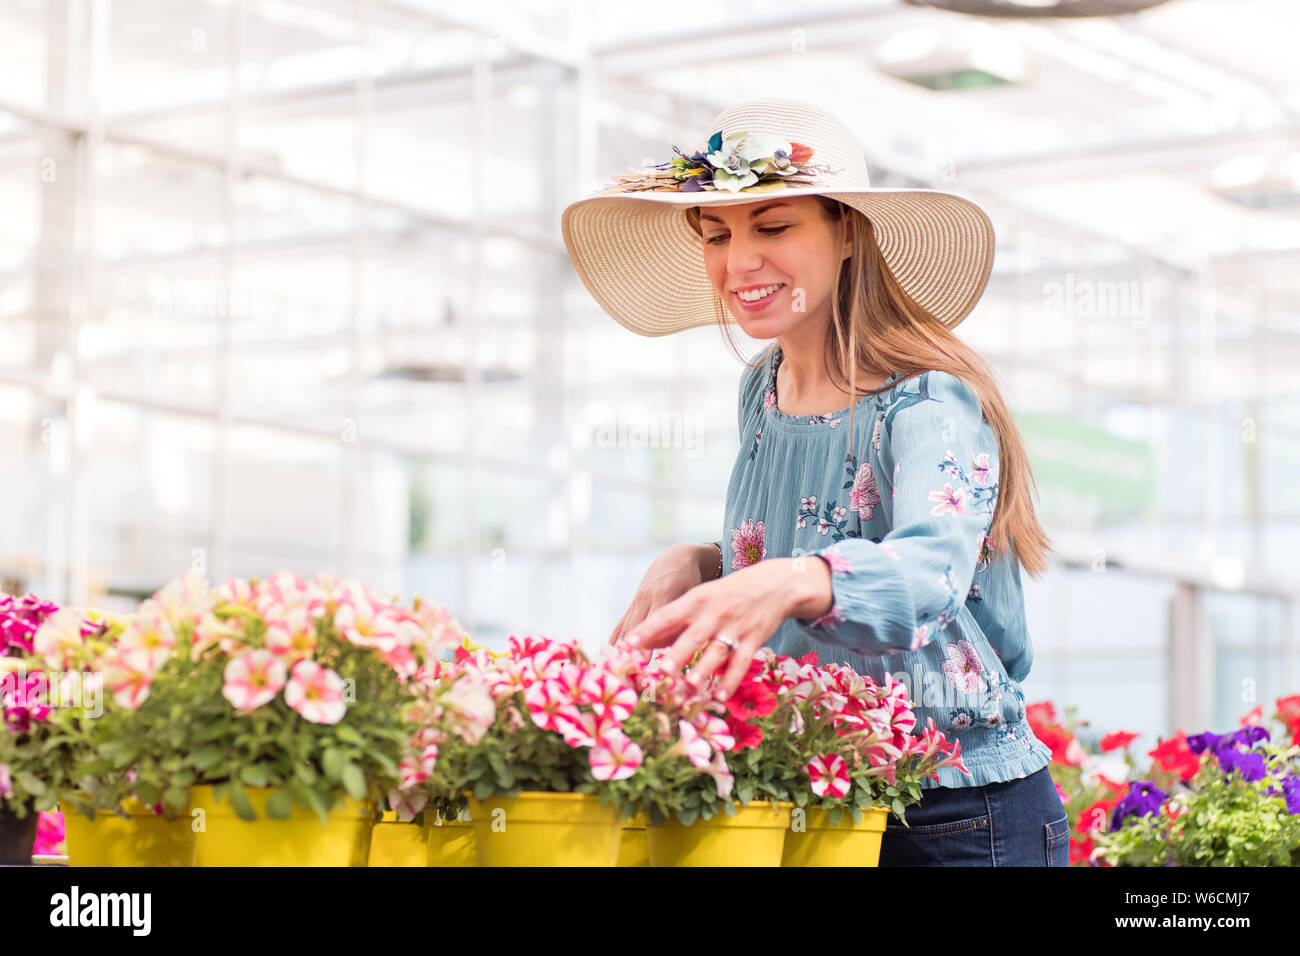 Gerne stilvolle junge Frau Auswahl eine bunte petunia Pflanze aus einem Sortiment von verschiedenen Farben in der Gärtnerei mit einem erfreuten Lächeln Stockfoto